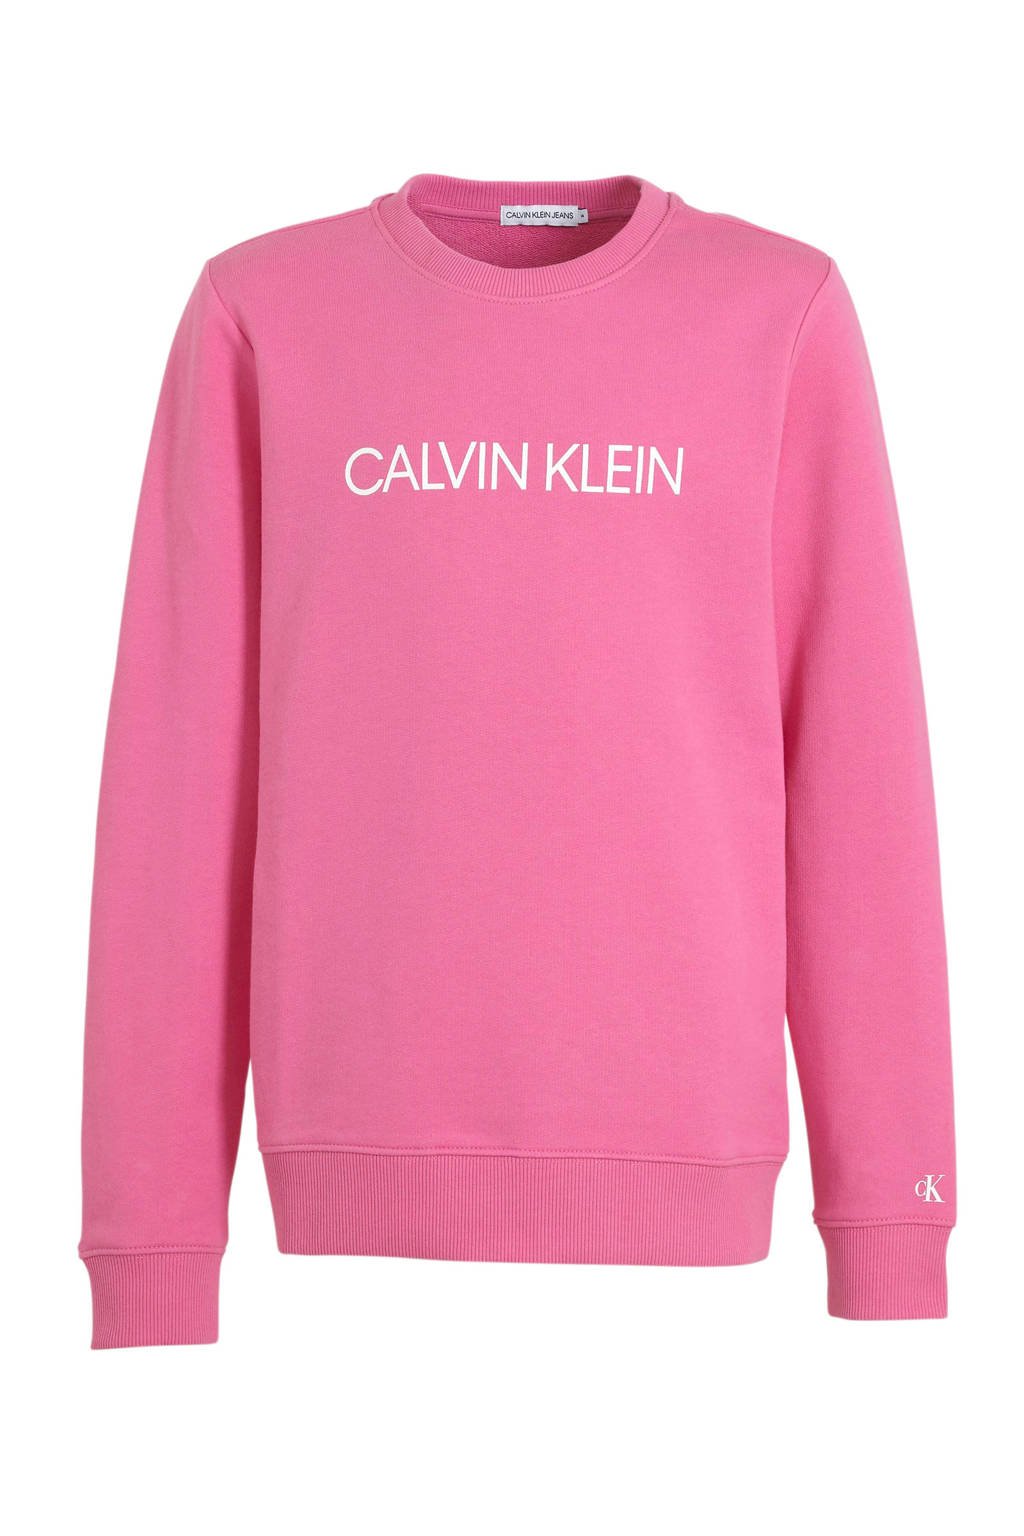 Melodramatisch Sluimeren waarom niet CALVIN KLEIN JEANS sweater met logo roze | wehkamp